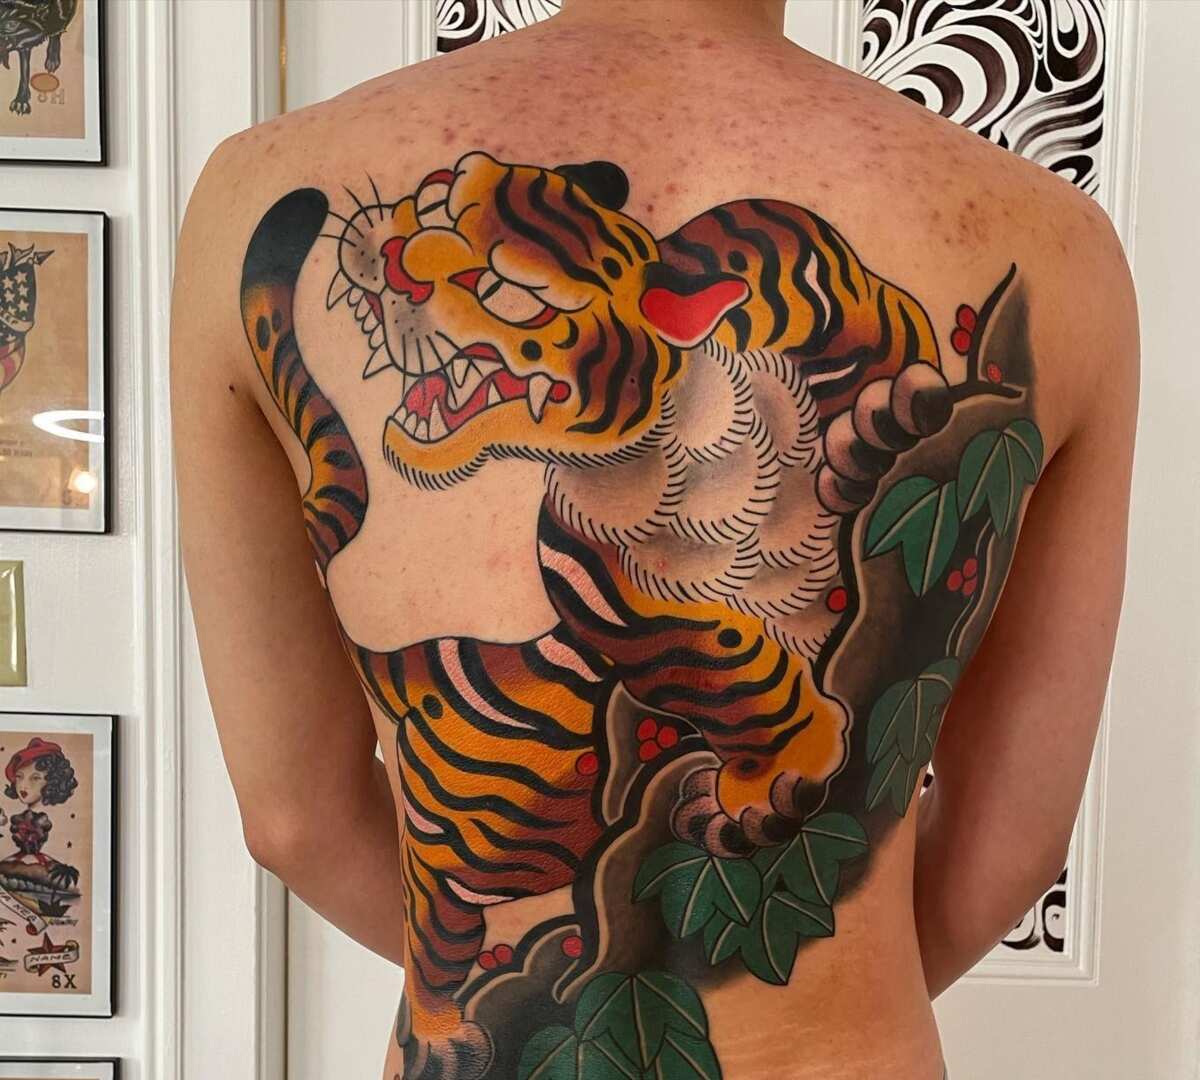 10 Best Tiger Tattoo Ideas Best Ideas for Tiger Tattoos  MrInkwells